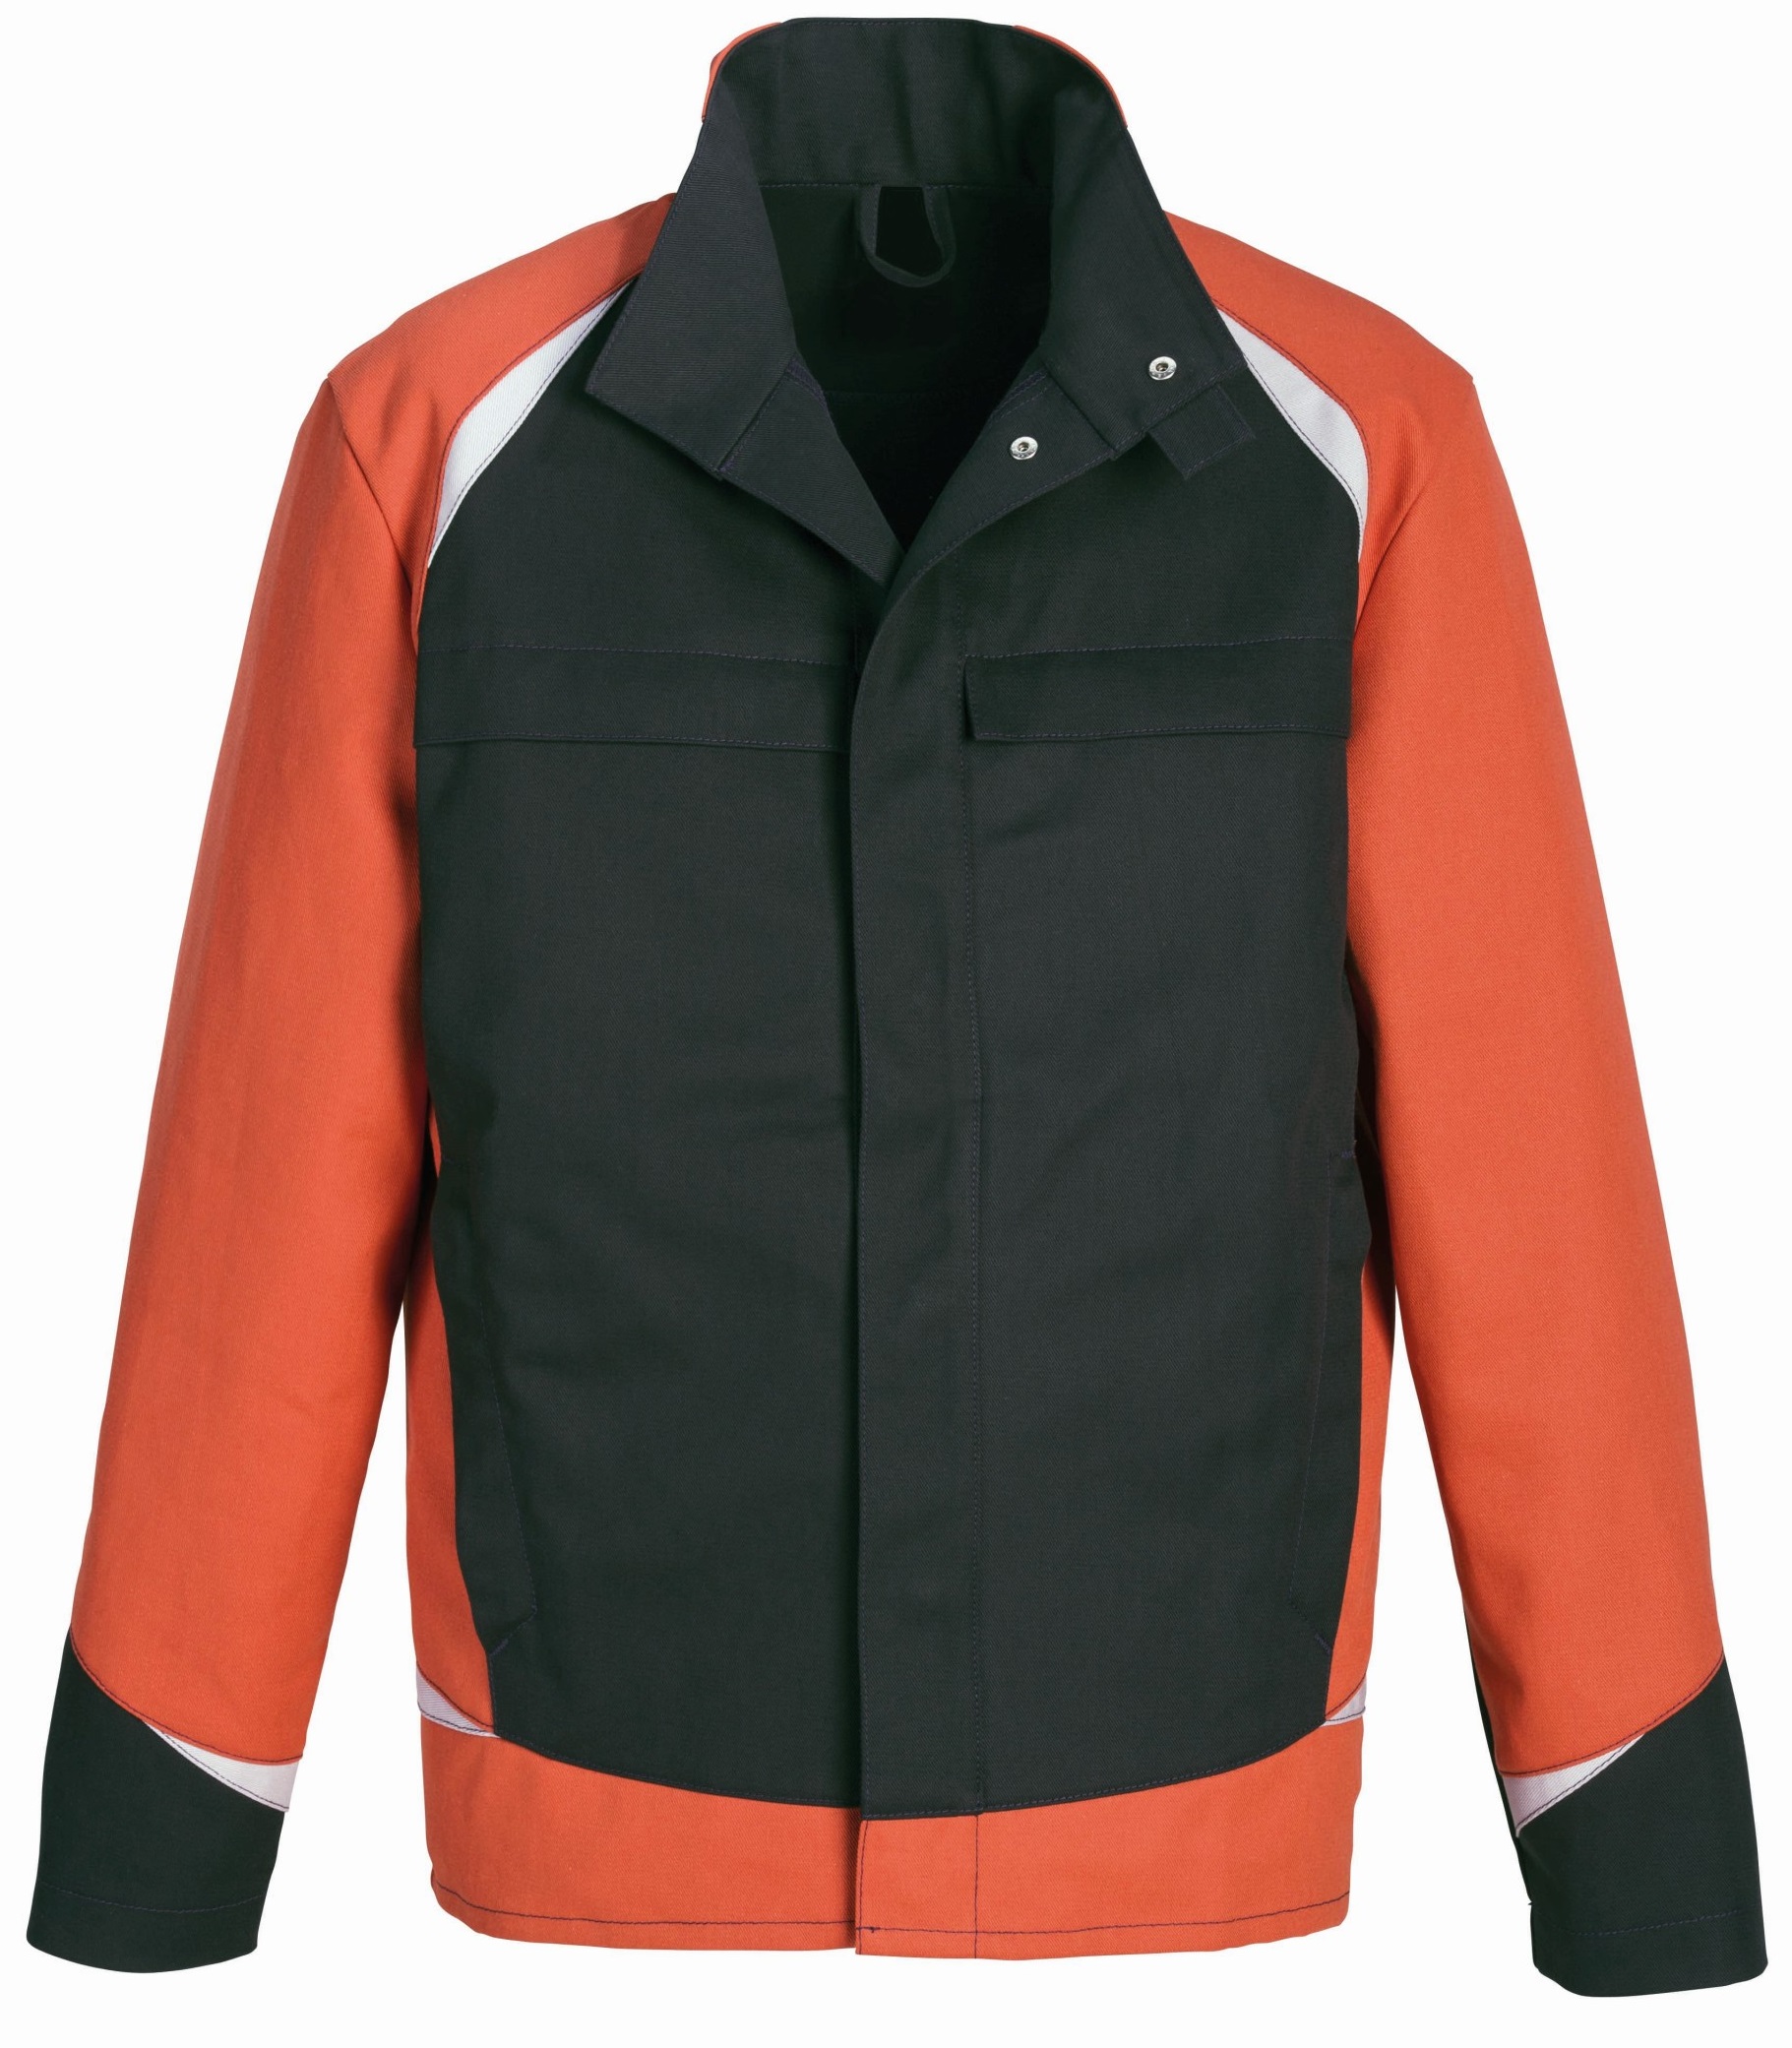 ROFA Schweisserschutz Jacke Arbeitsjacke Berufsjacke Schutzjacke Splash Proban dunkelanthrazit rot ca 330 g